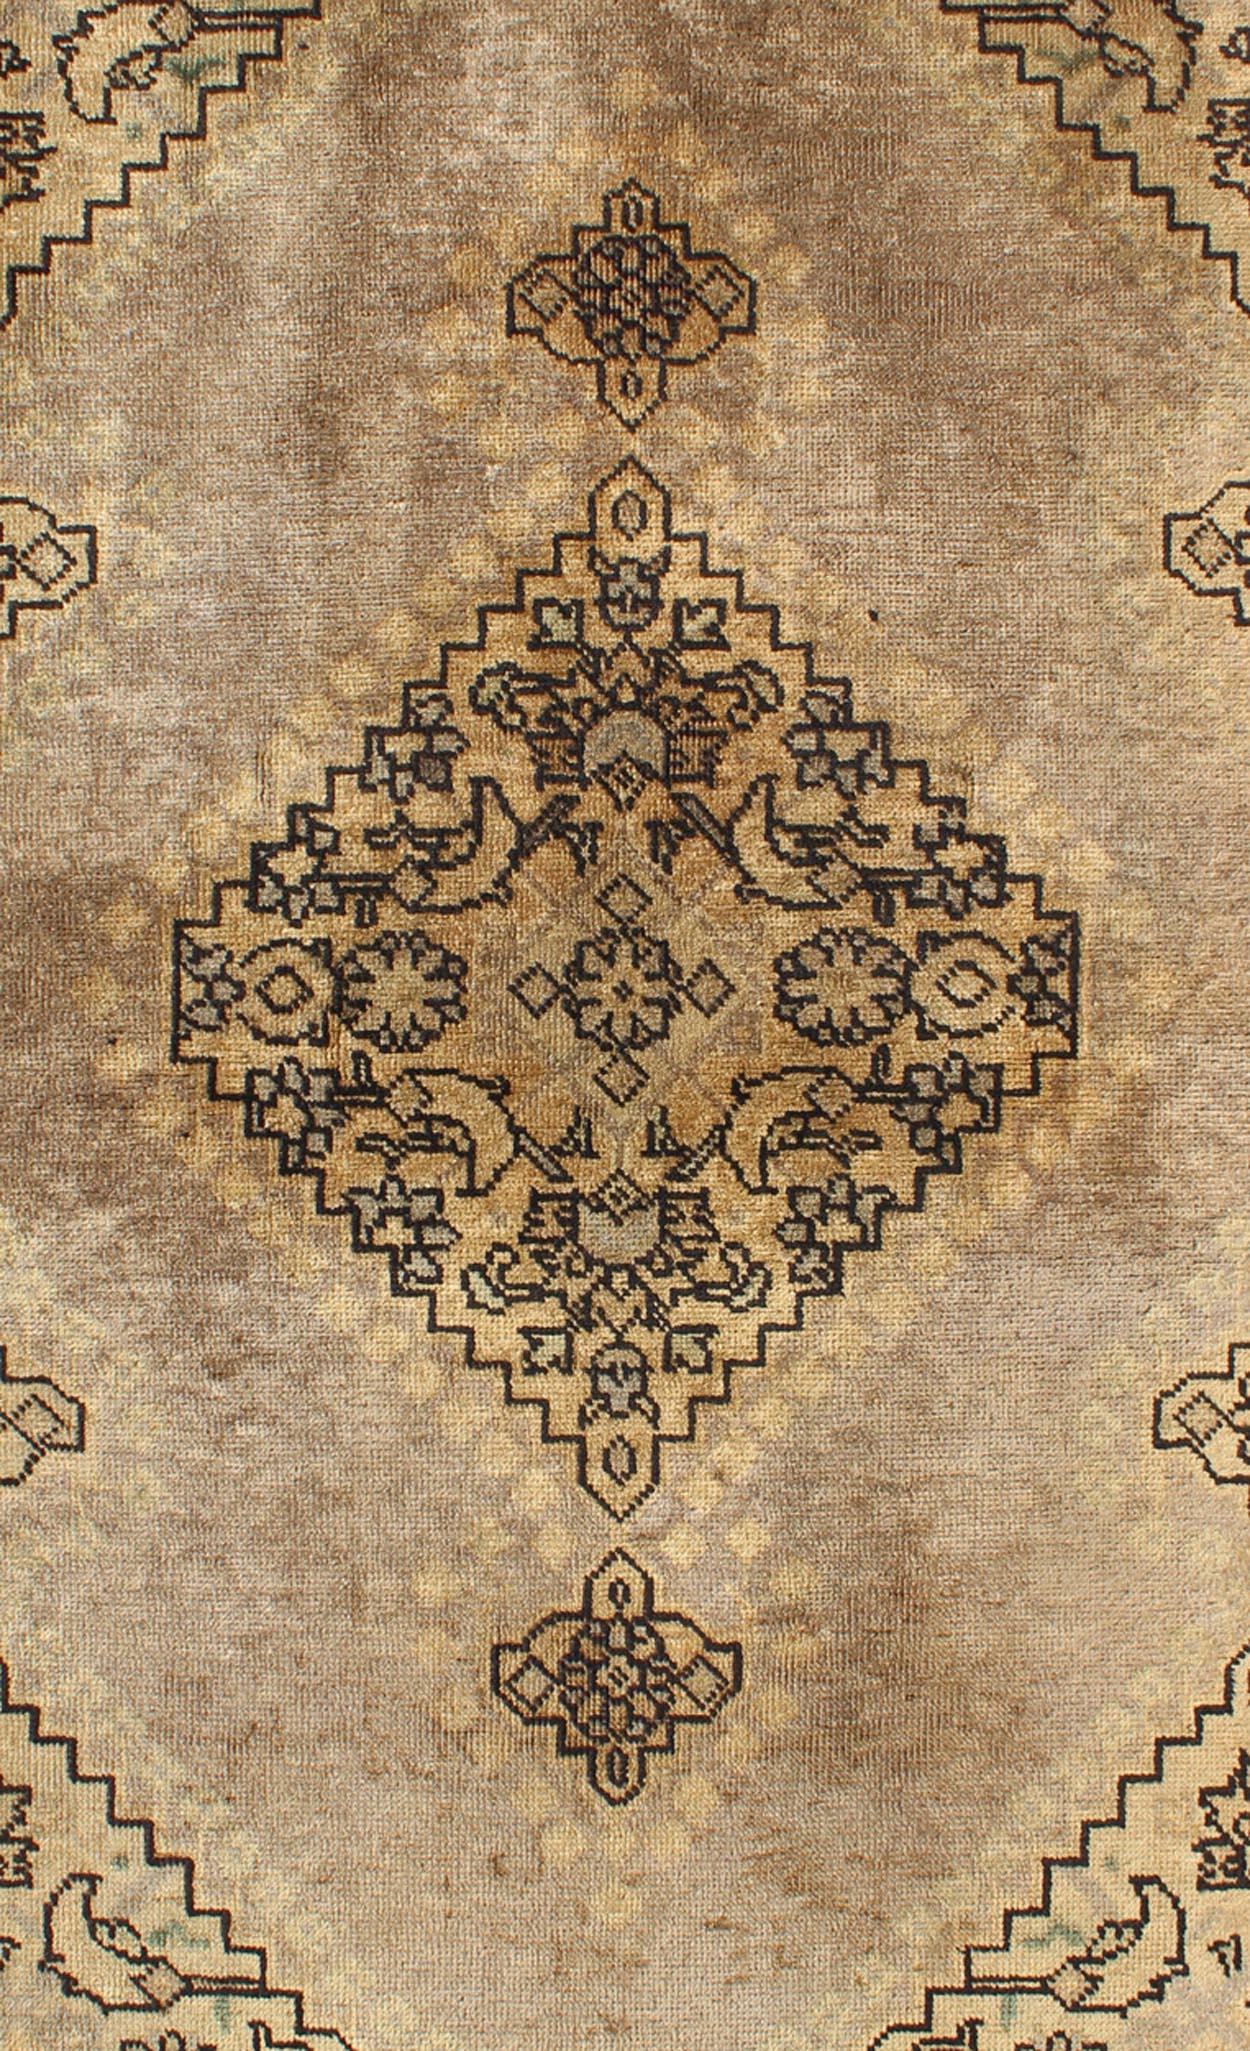 Medaillon-Stil Tabriz persischen Vintage-Teppich mit wirbelnden Garten Muster. Keivan Woven Arts / Teppich H-102-39, Herkunftsland / Art: Iran / Täbris, um 1950
Maße: 3'3 x 5'0.
Dieser spektakuläre persische Täbriz zeigt eine prächtige Pracht, die